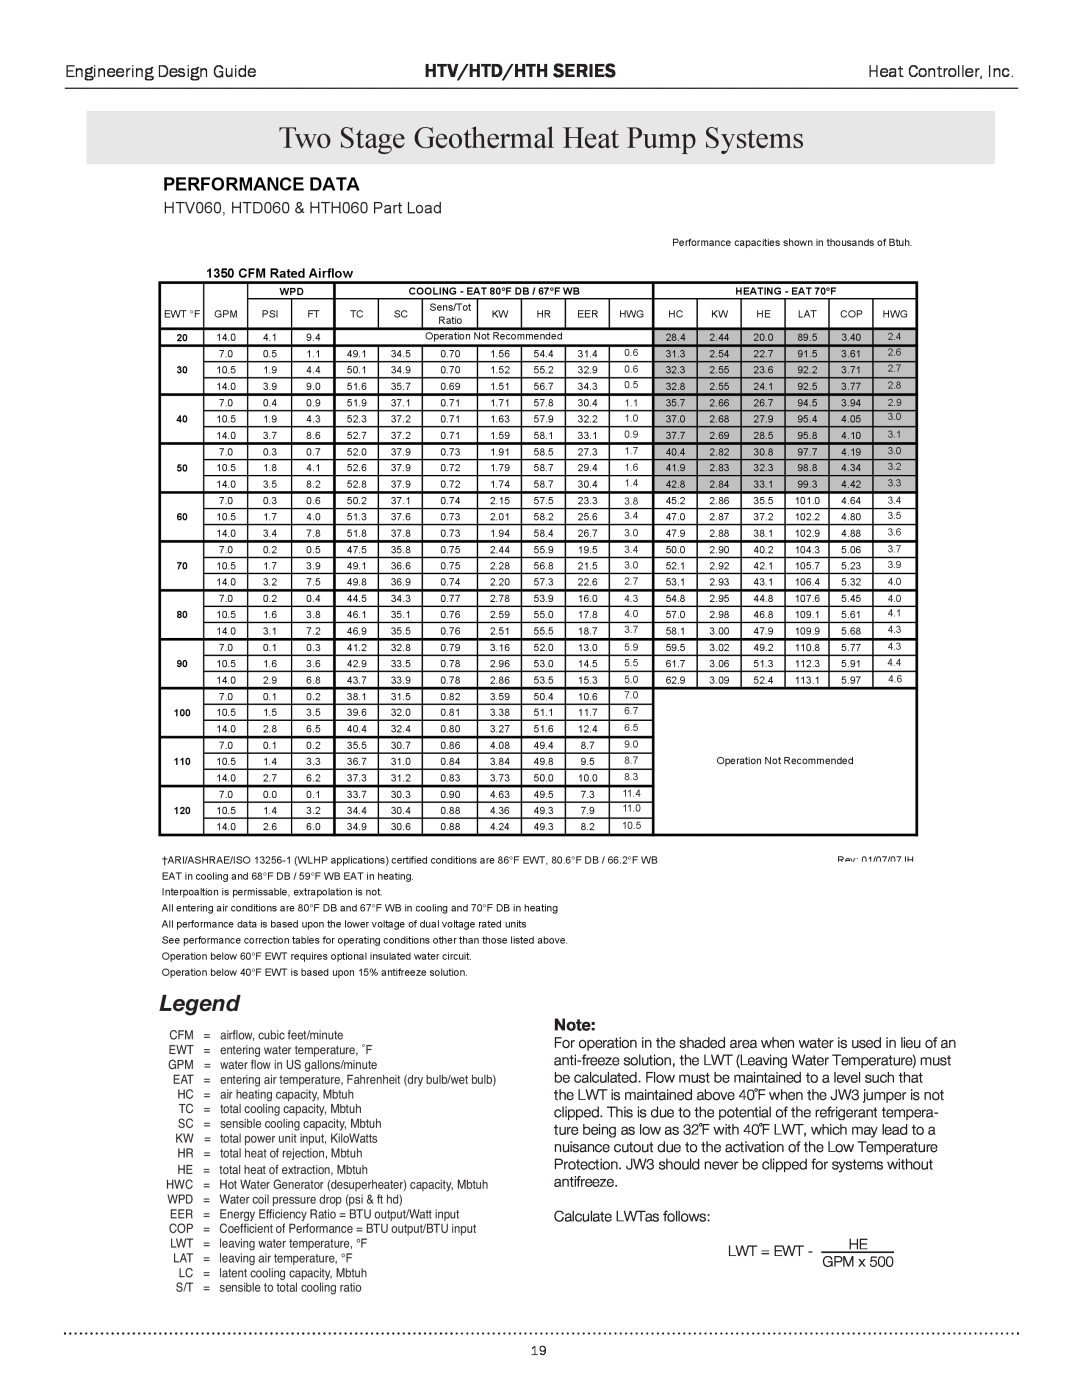 Heat Controller HTV SERIES manual HTV060,/6äÈäÊ* ÀÌÊ&HTD060œPart `Load, Egend, Htv/Htd/Hth Series, Performance Data, œÌi 